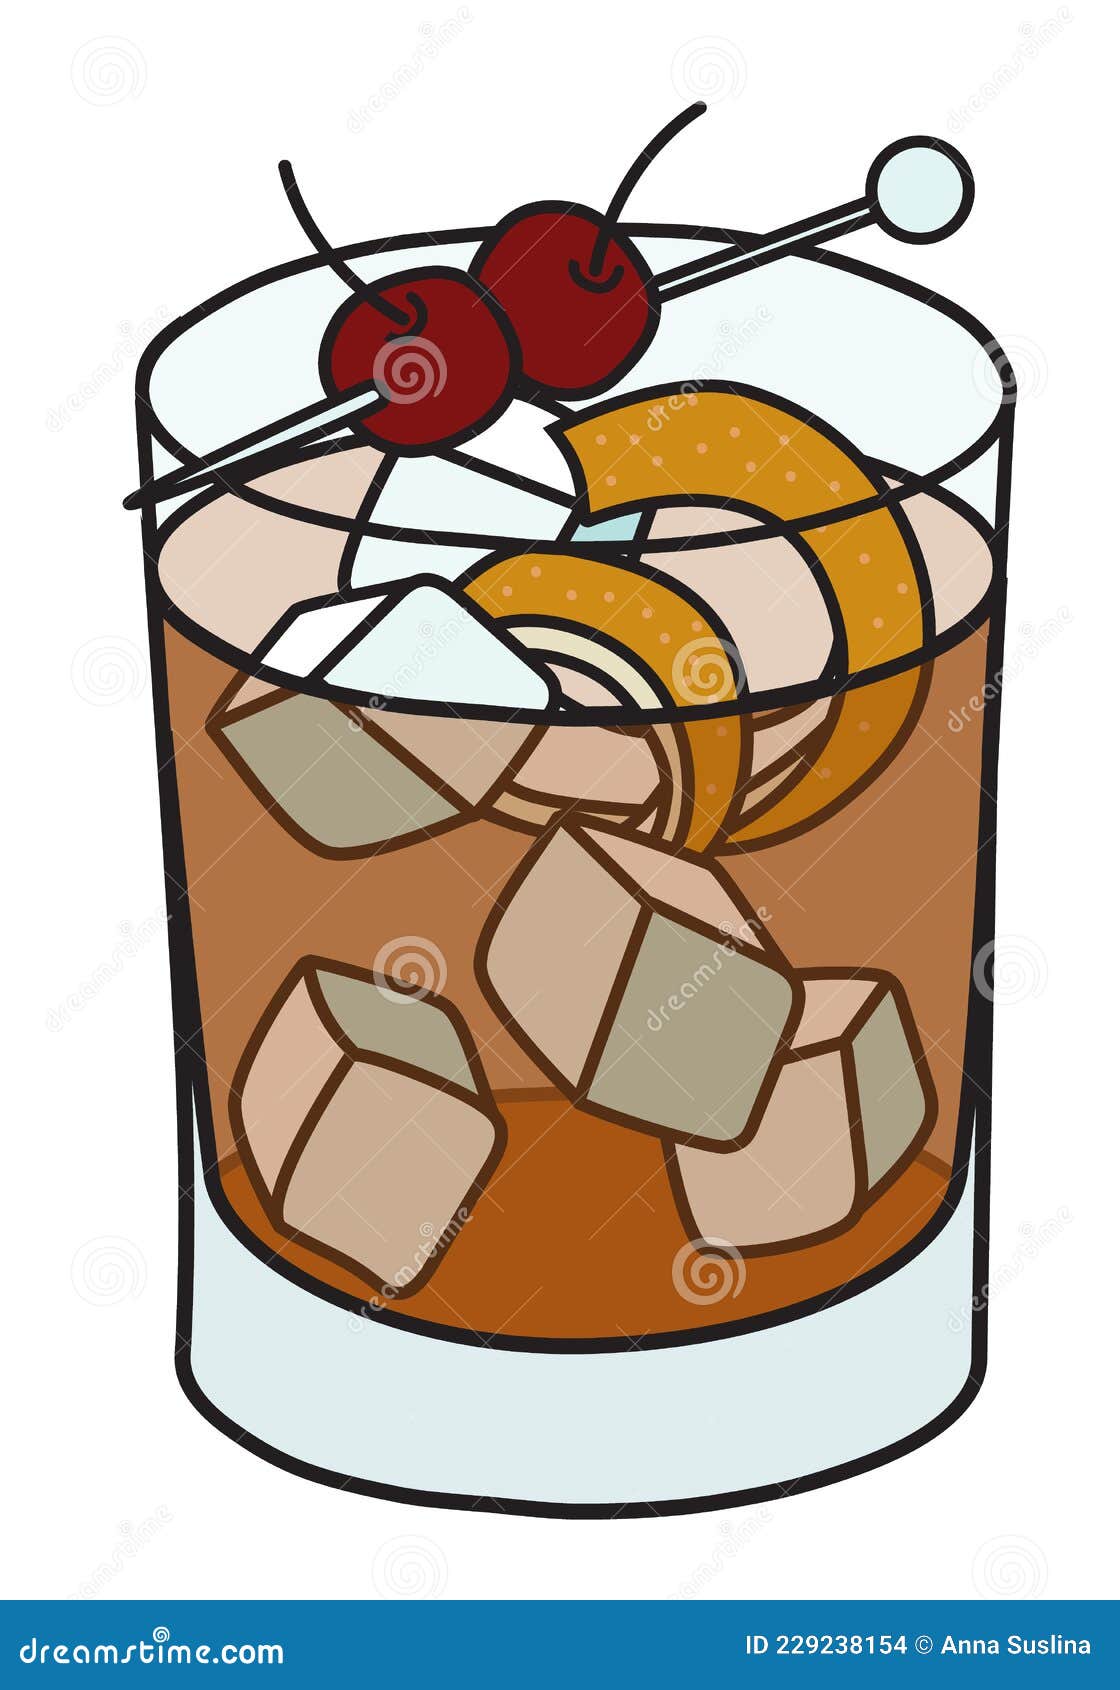 Vieux Carre Clásico Coctel De Iba Listado En Cristal De Rocas. Bebida a Base De Coñac Y Whisky Con Un Toque Naranja Y Ilustración del Vector - Ilustración whisky: